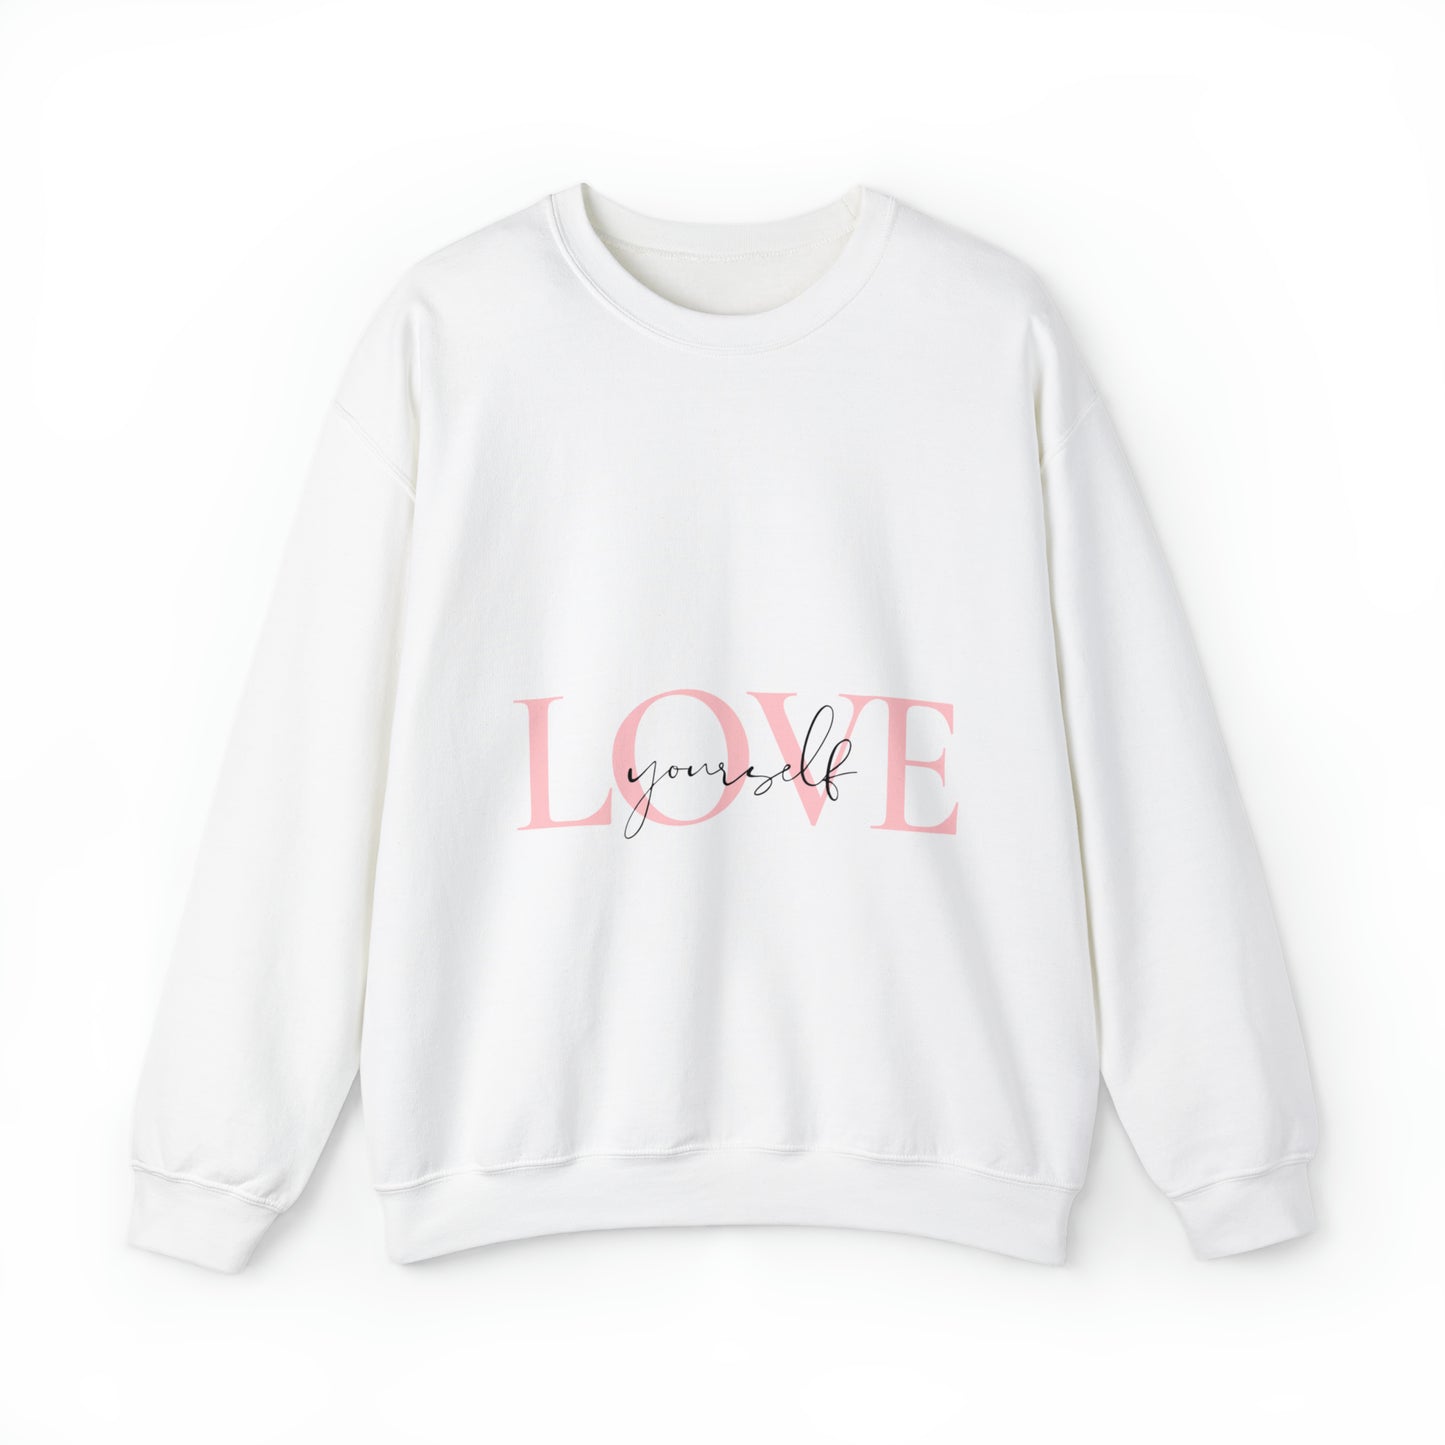 Love Yourself™ Unisex Crewneck Sweatshirt